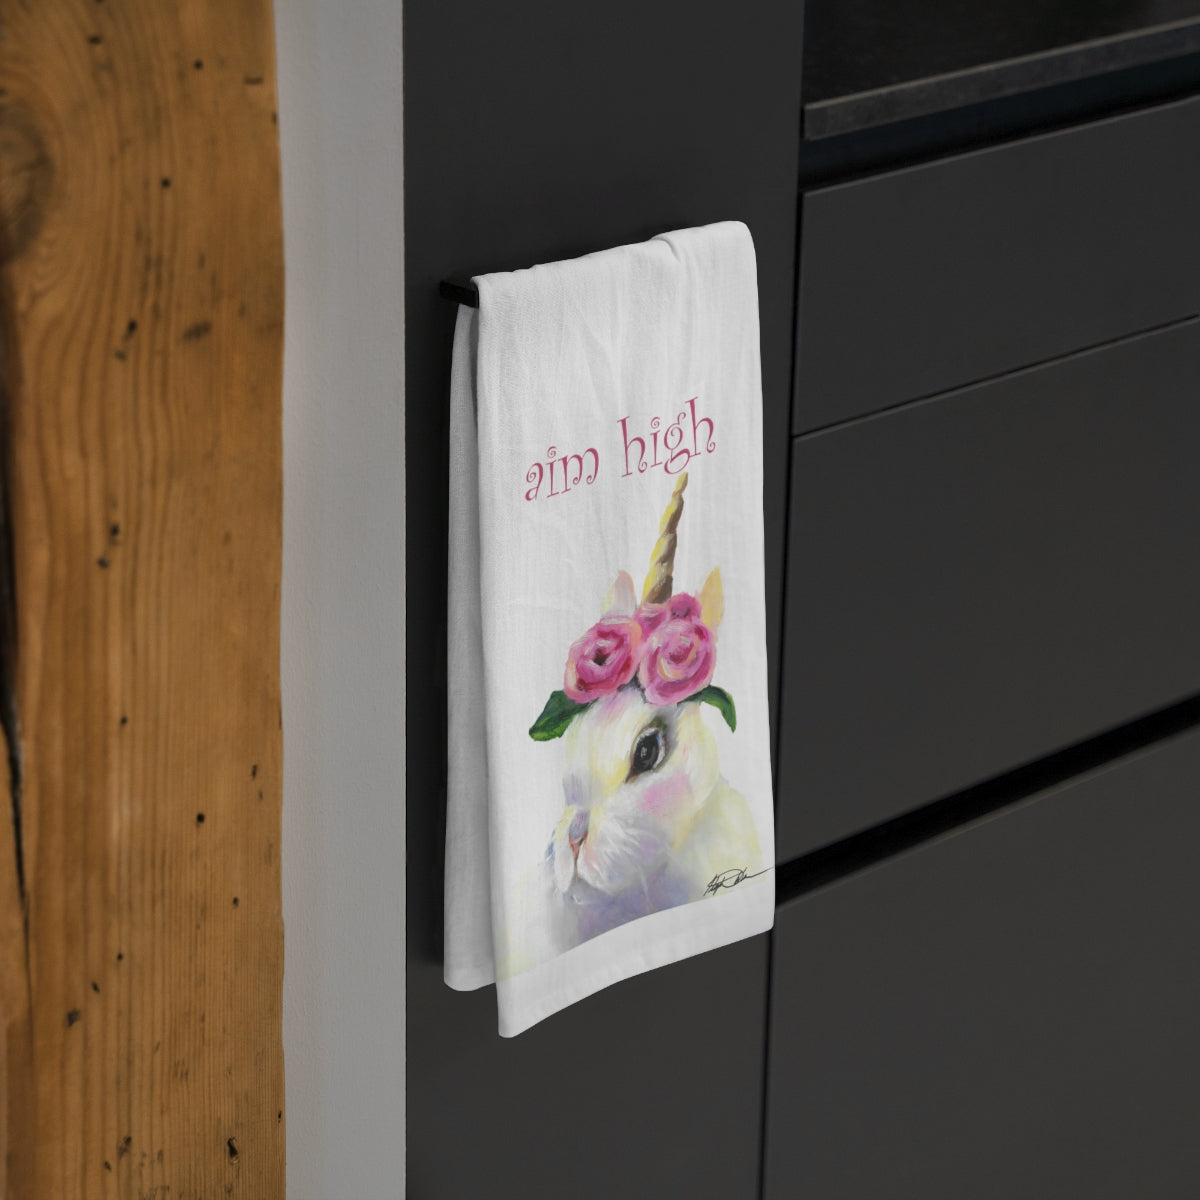 bunny unicorn tea towel with words "aim high"